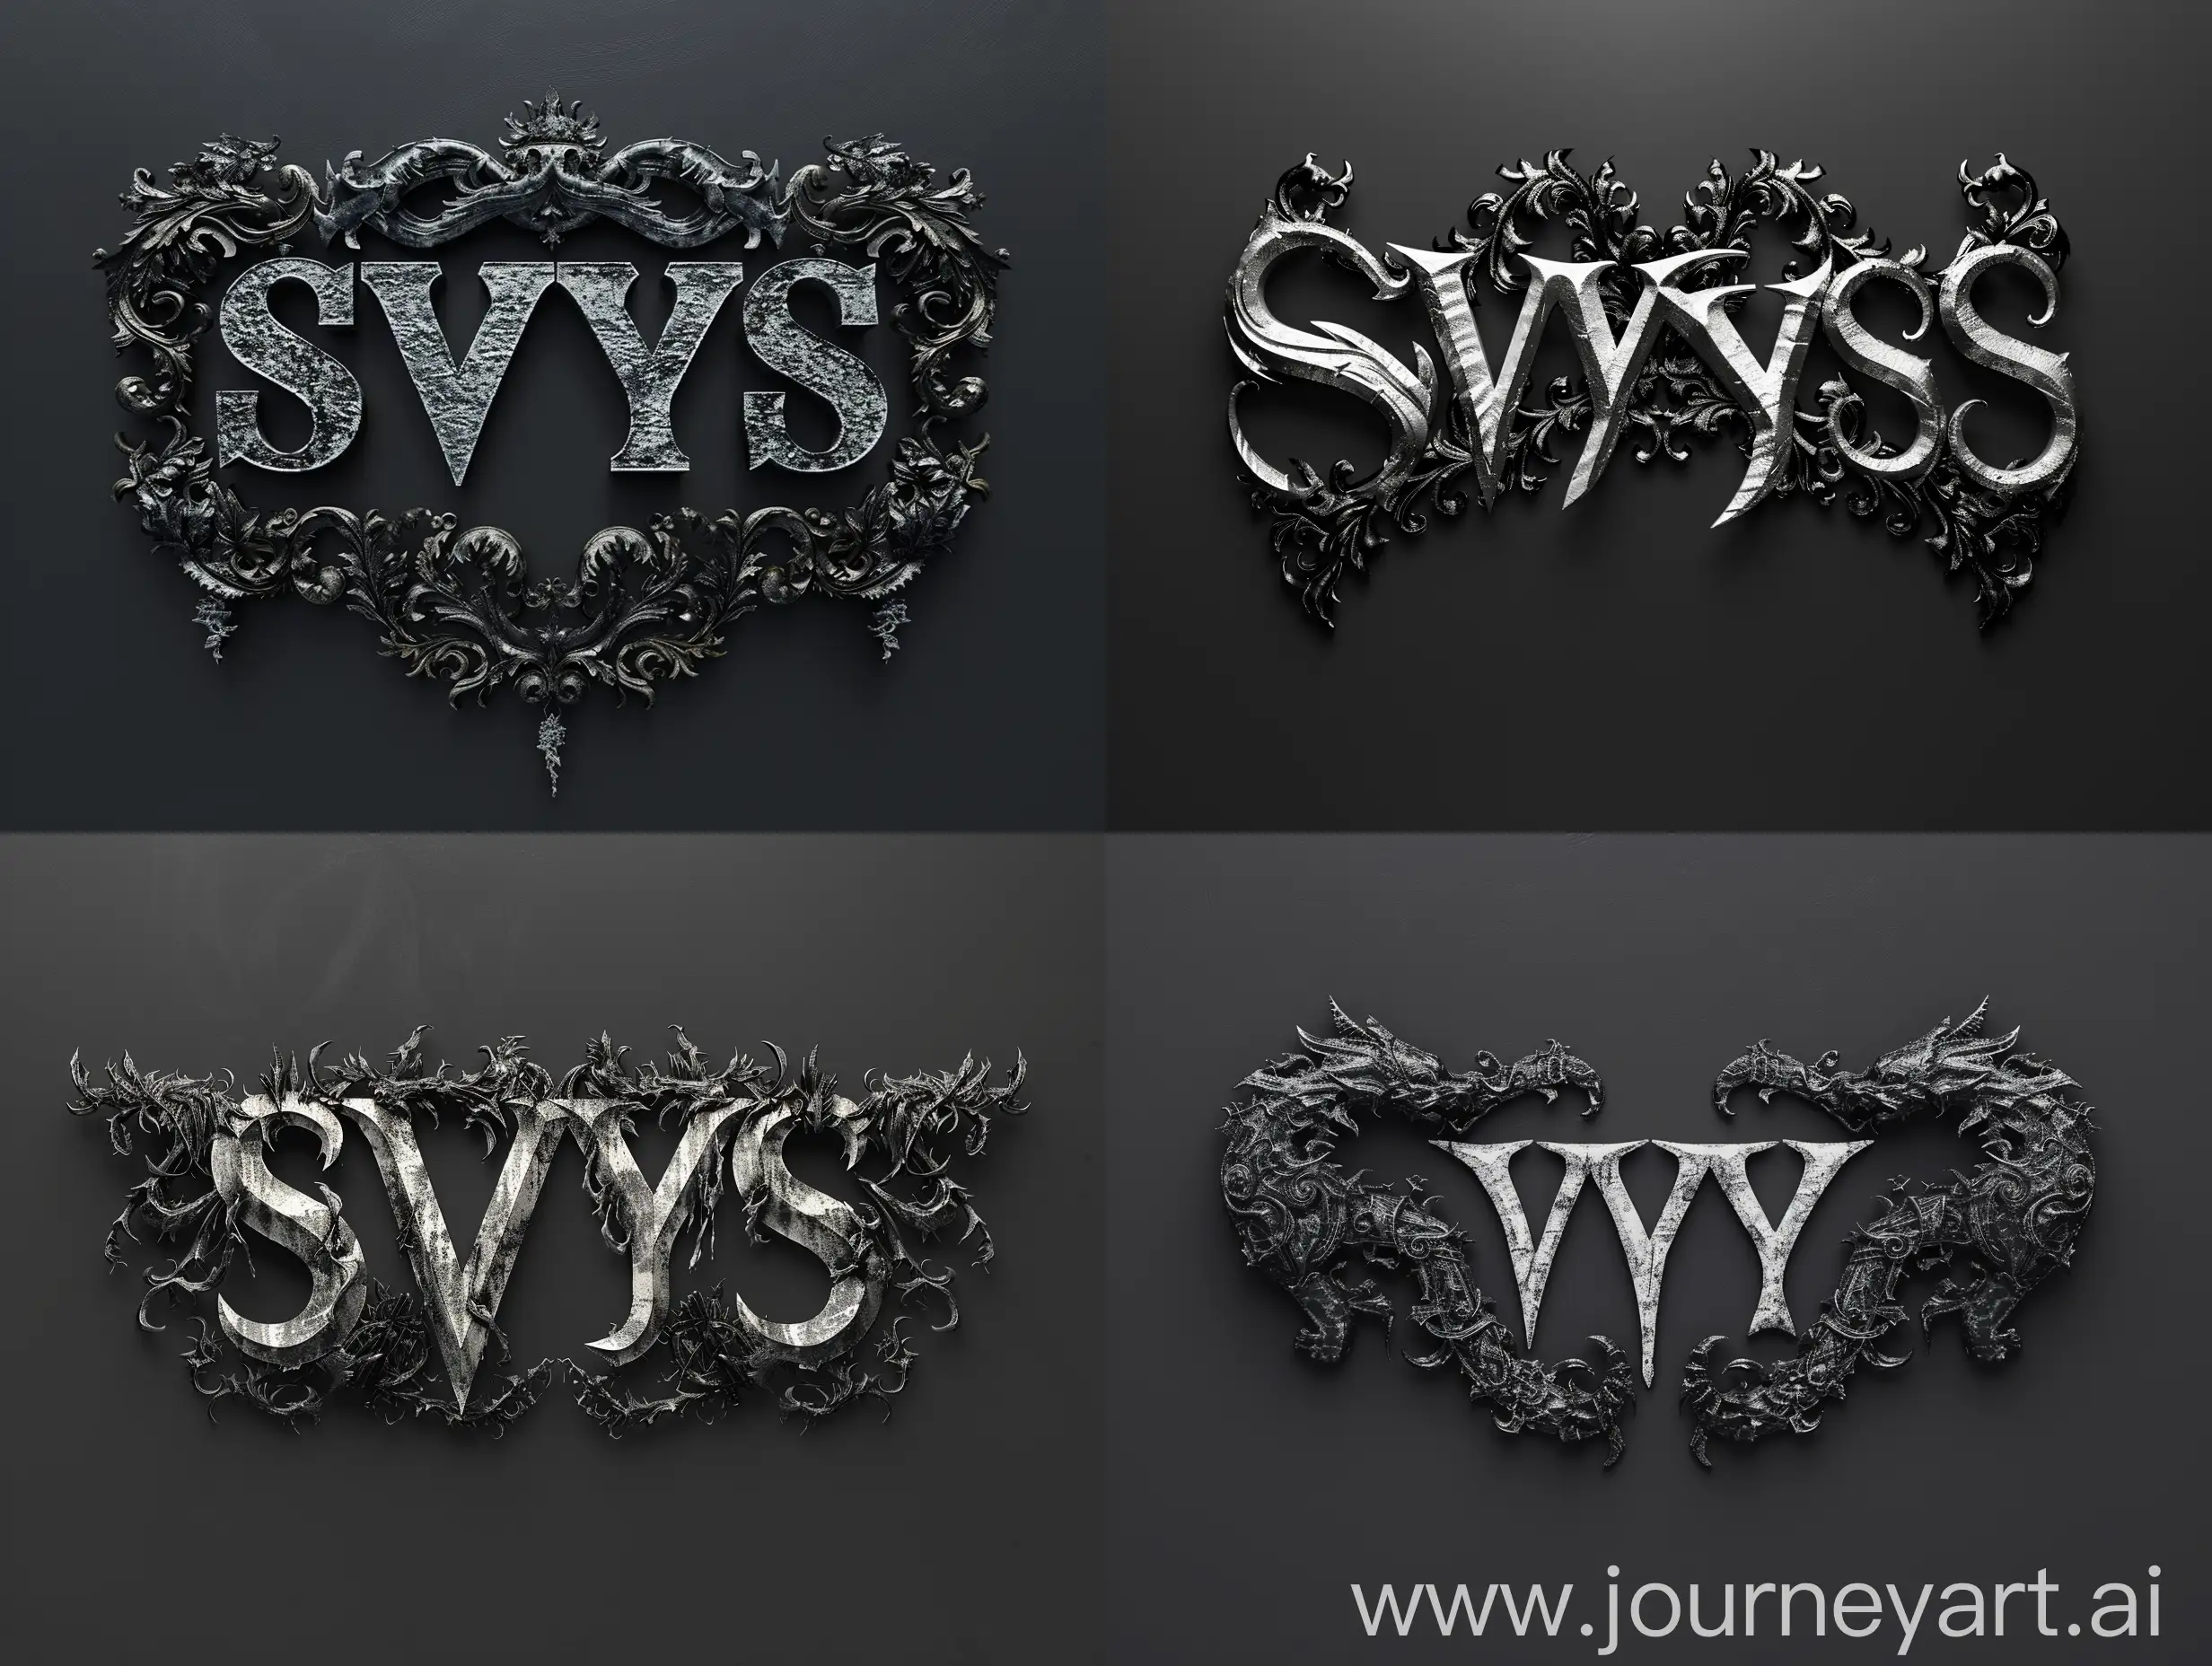 Black-Metal-Font-Rendering-SVYS-on-Black-Background